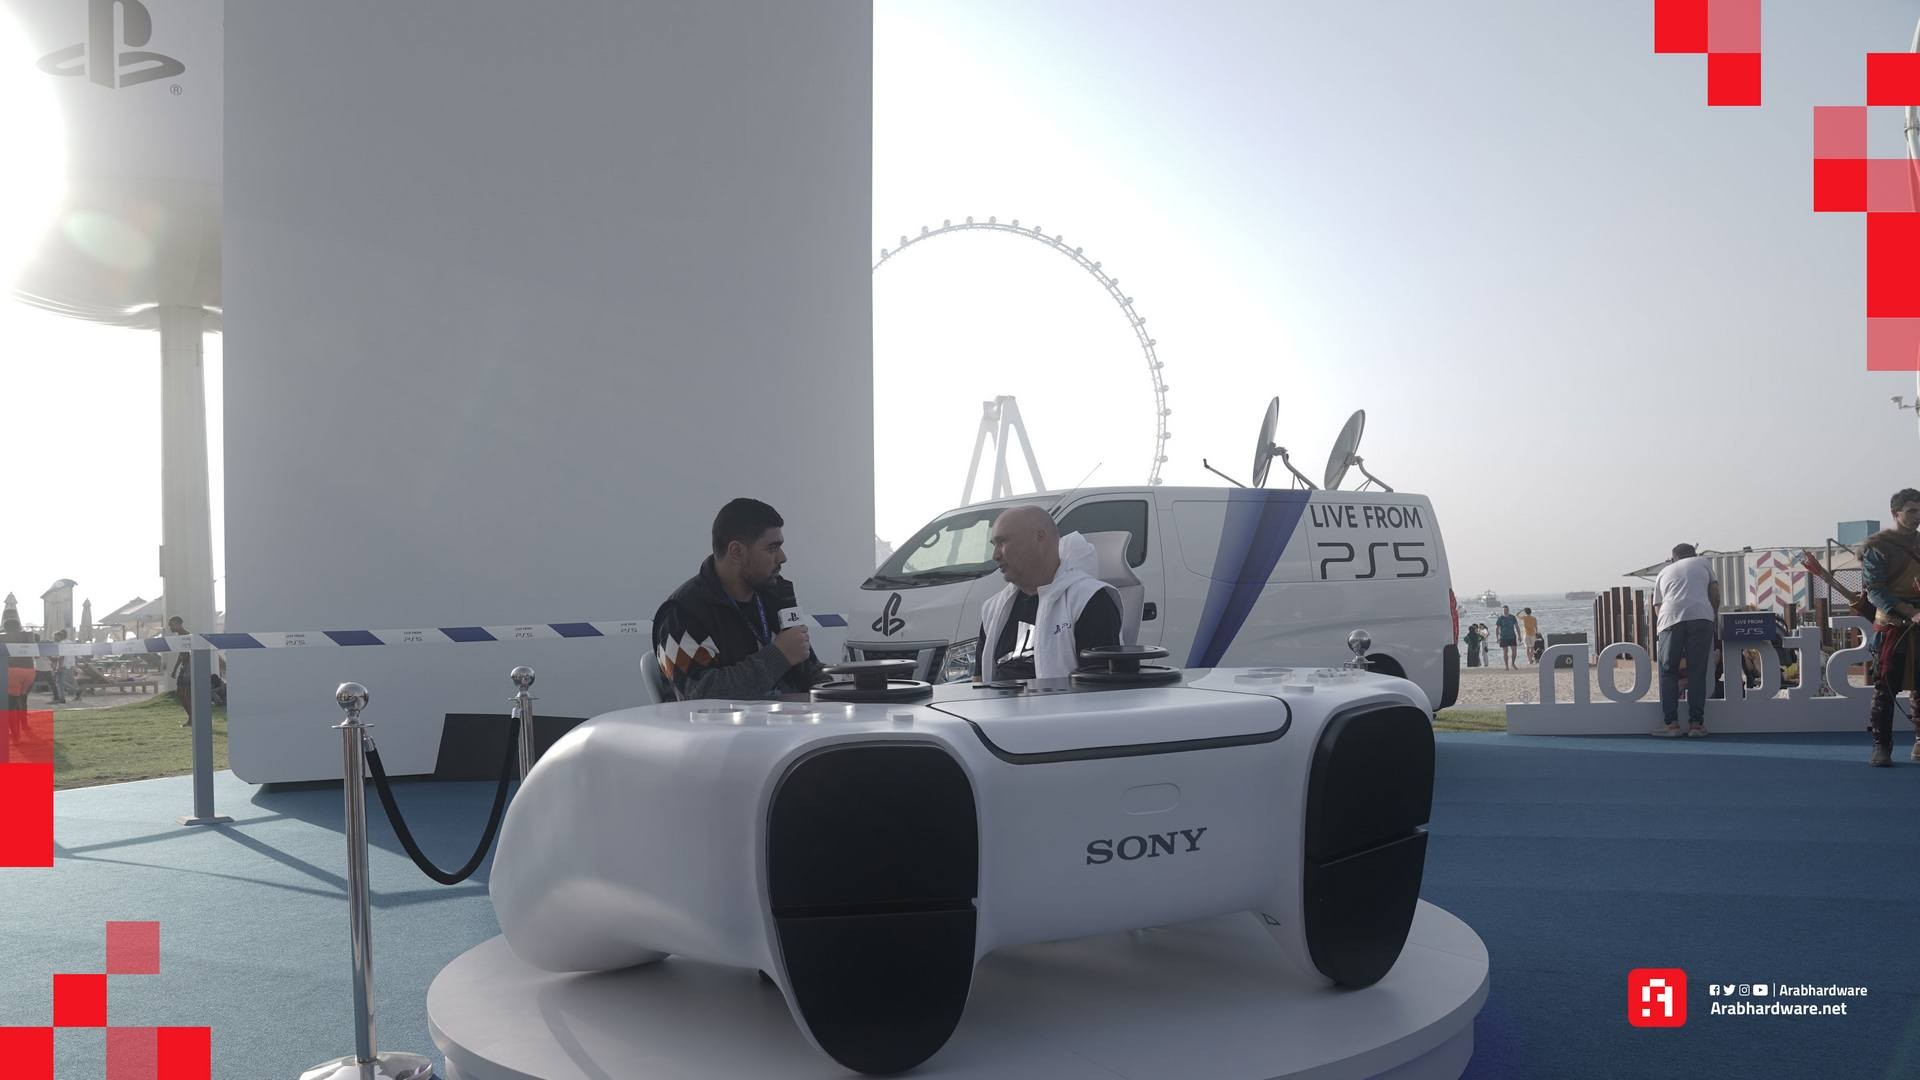 صور من حدث PS5 في دبي من بلايستيشن 5